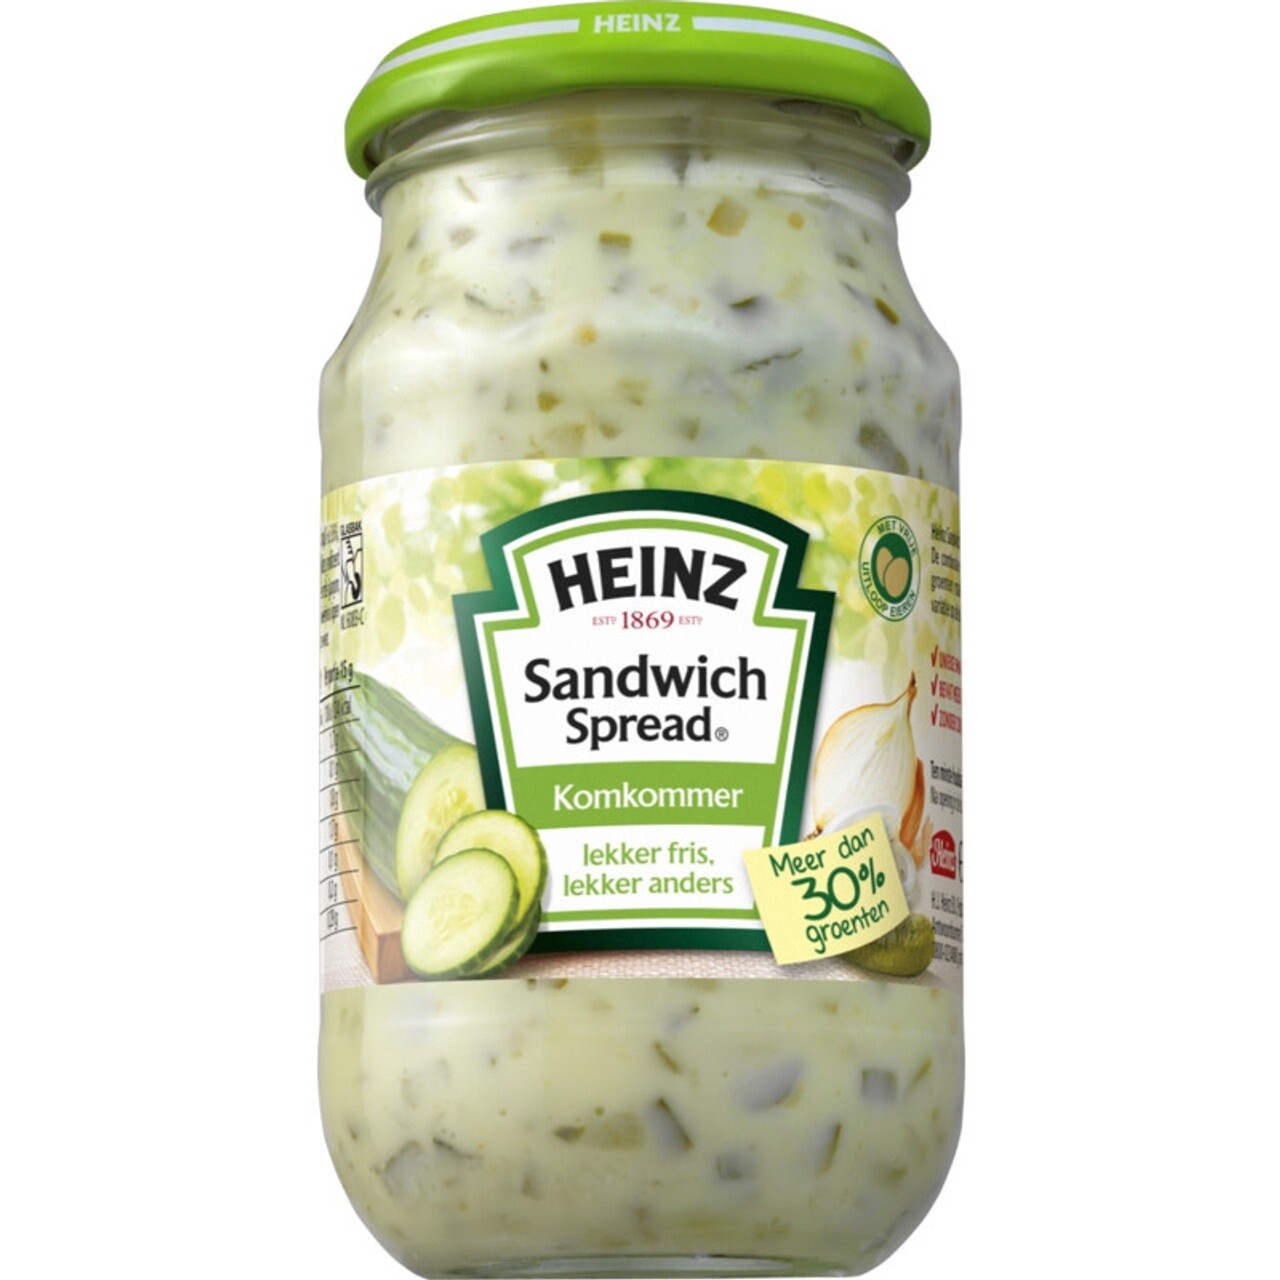 Heinz Cucumber Sandwich Spread (Komkommer) 300g